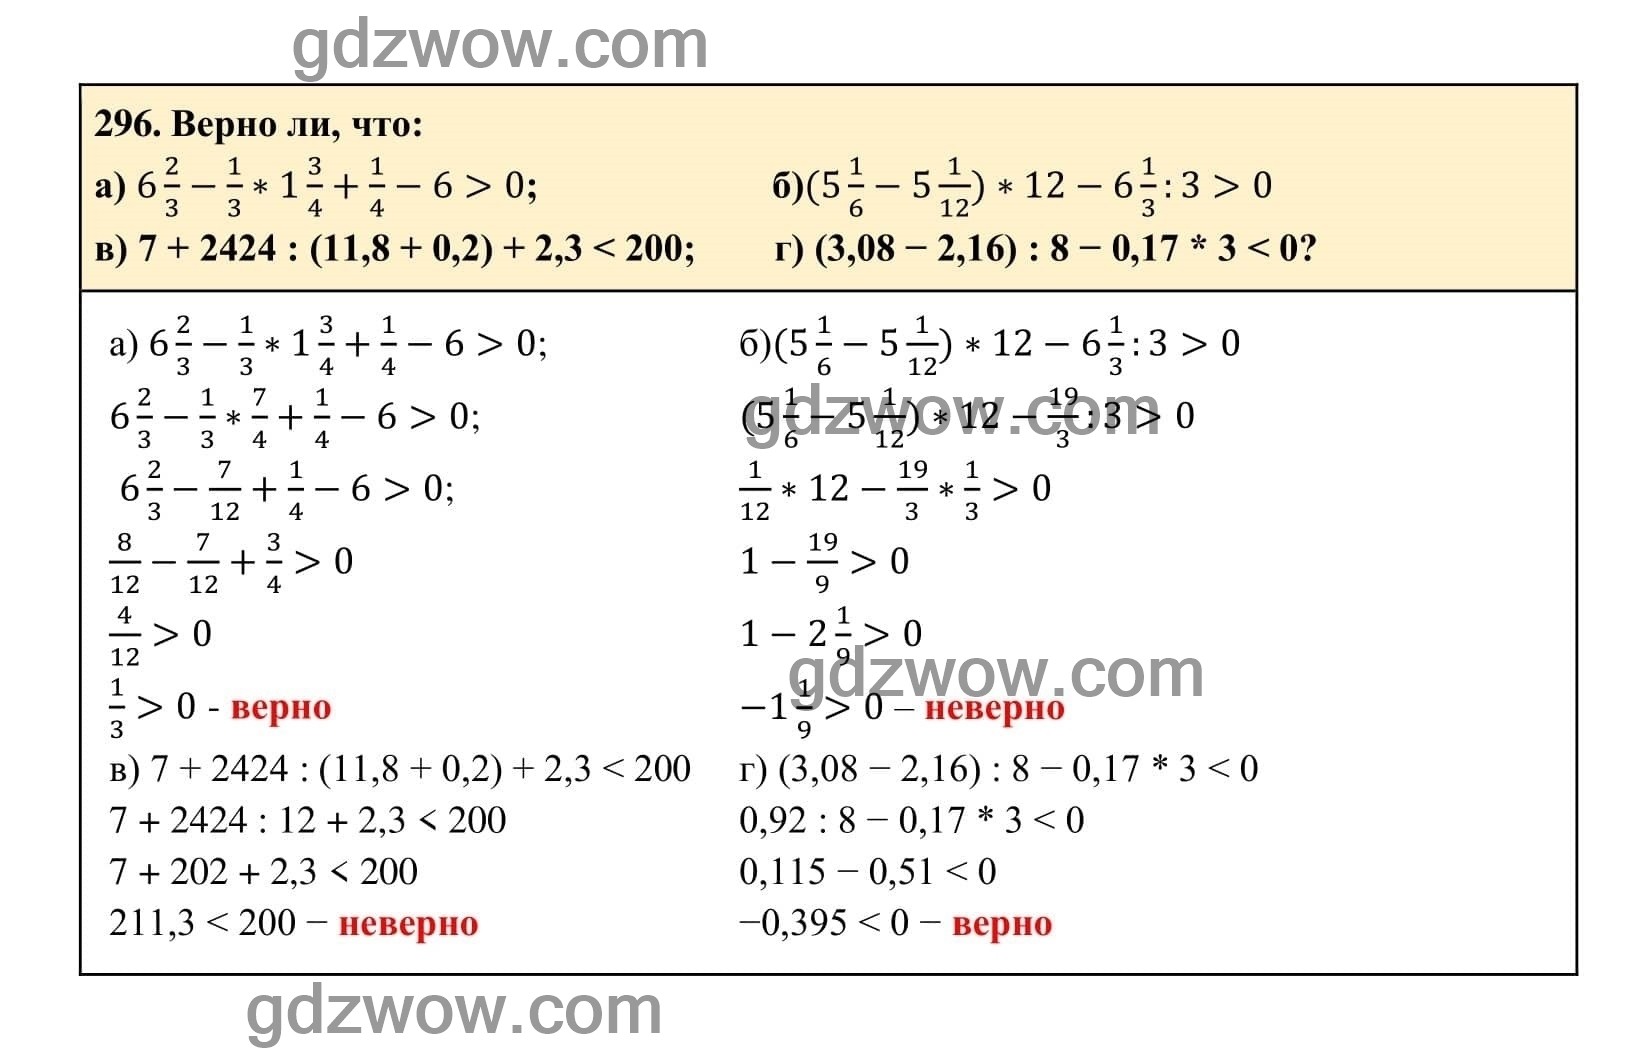 Упражнение 296 - ГДЗ по Алгебре 7 класс Учебник Макарычев (решебник) - GDZwow